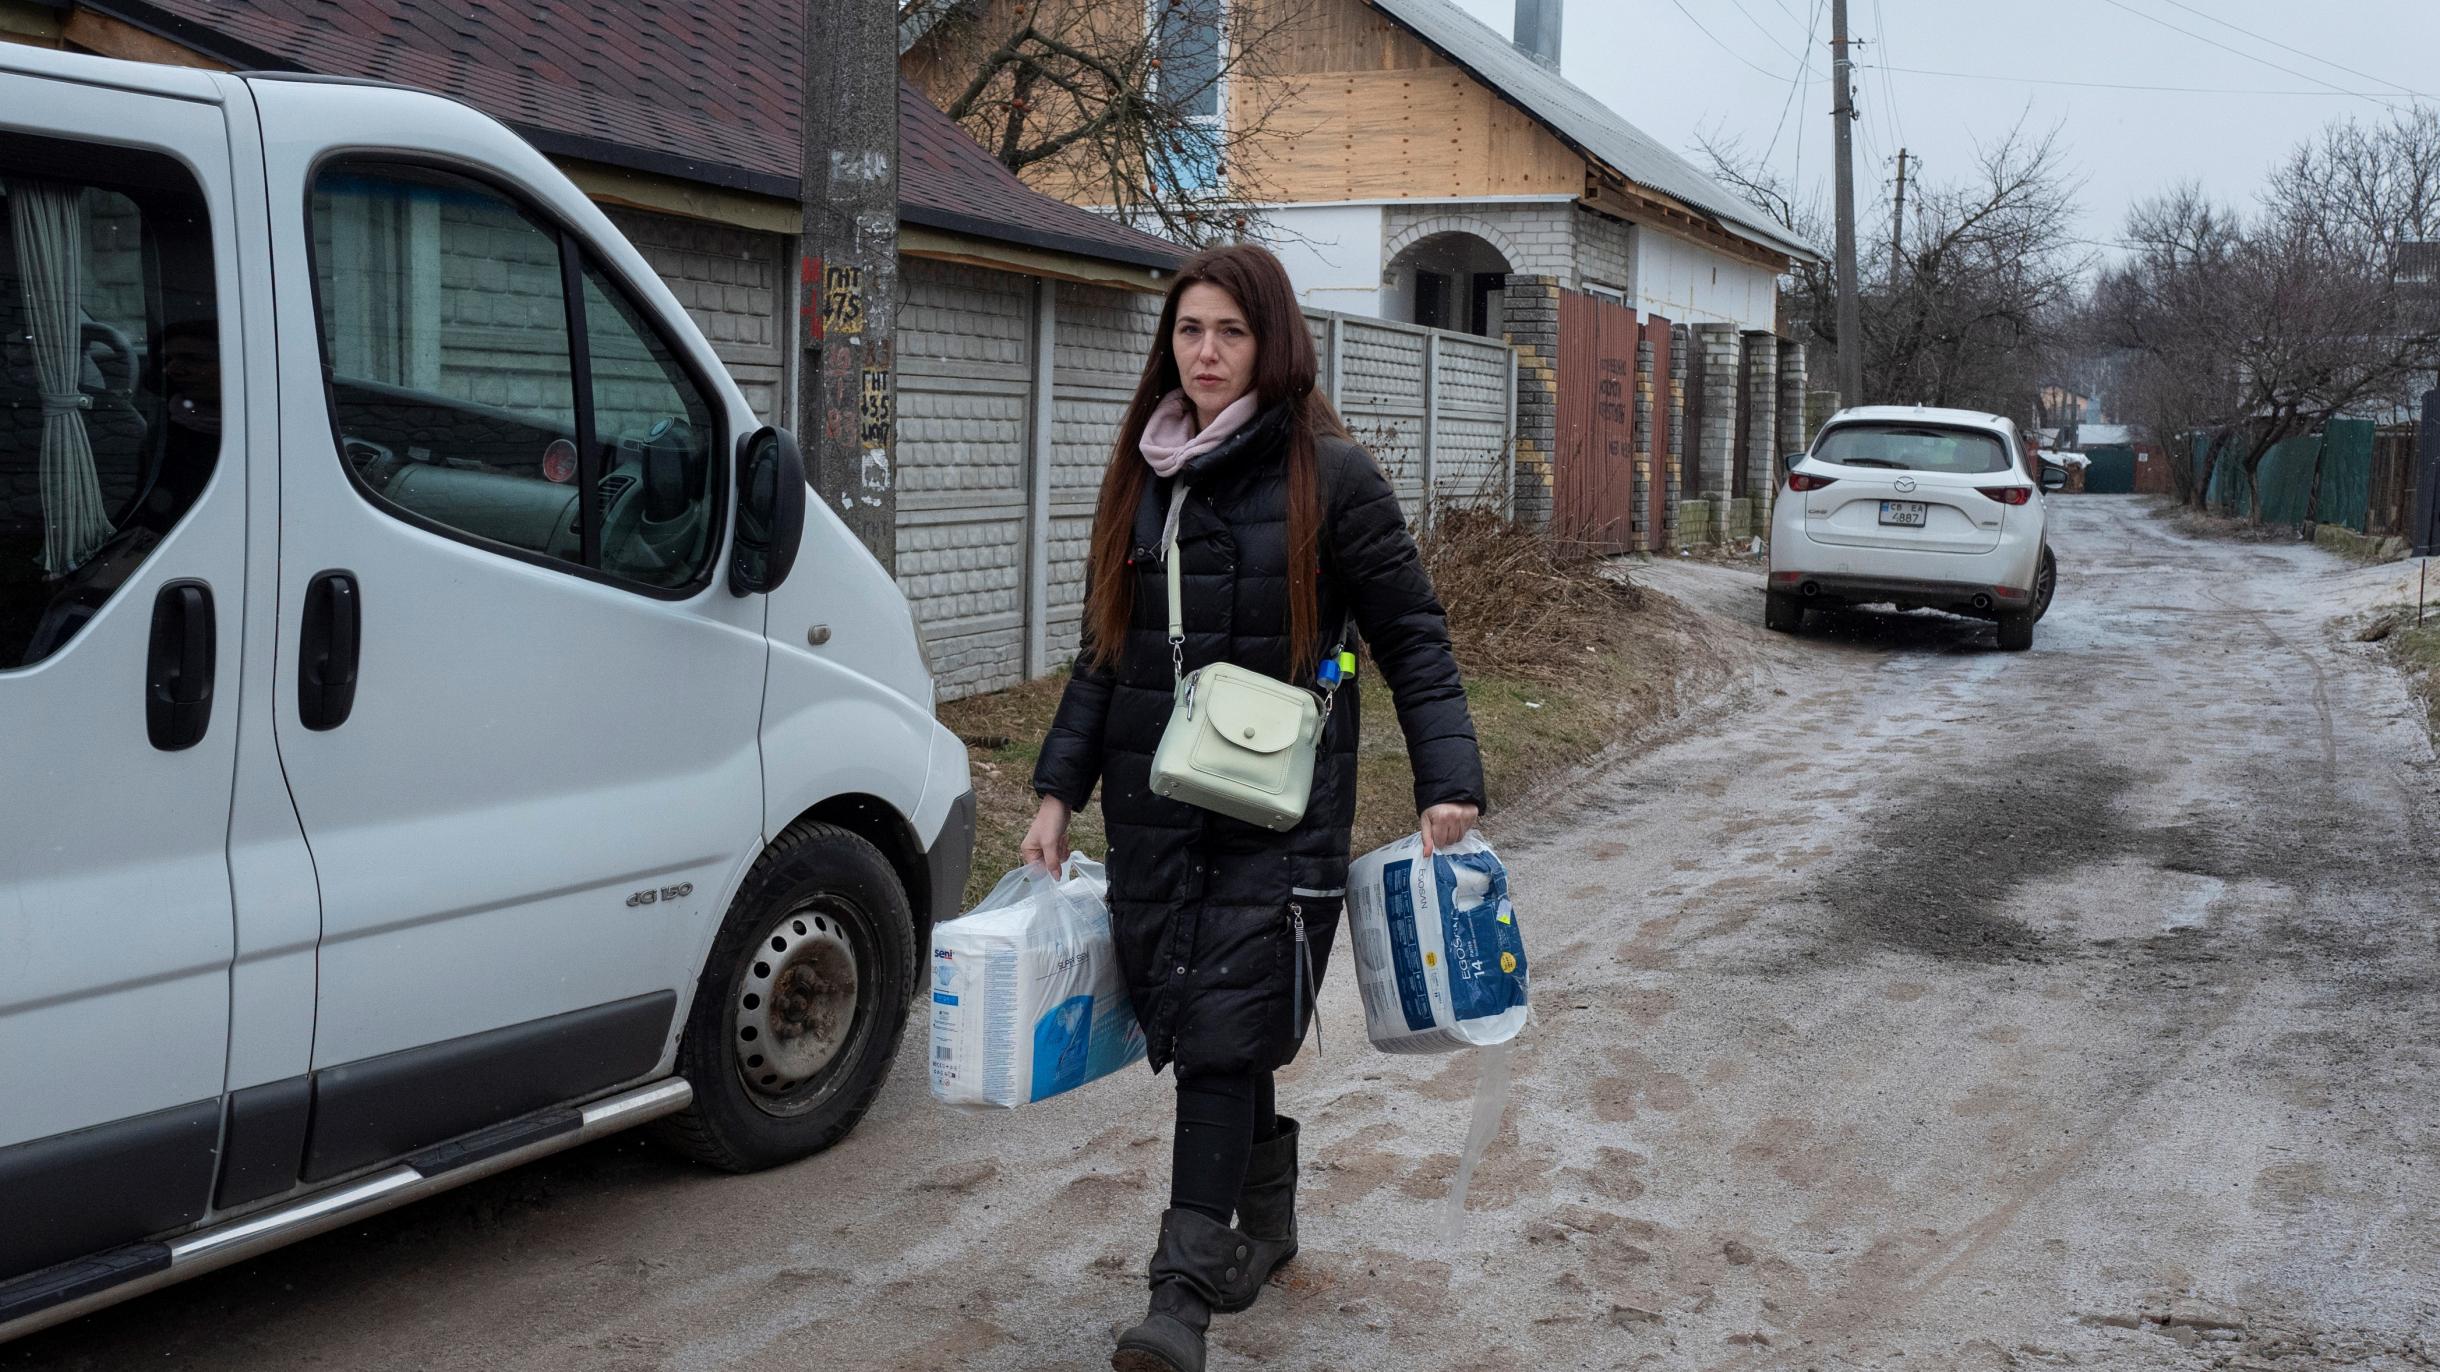 Ana Kulyeva läuft in Winterkleidung und mit Drogerieartikeln in der Hand eine Straße in Chernihiv entlang. Im Hintergrund sind zwei Autos und Häuser zu sehen.